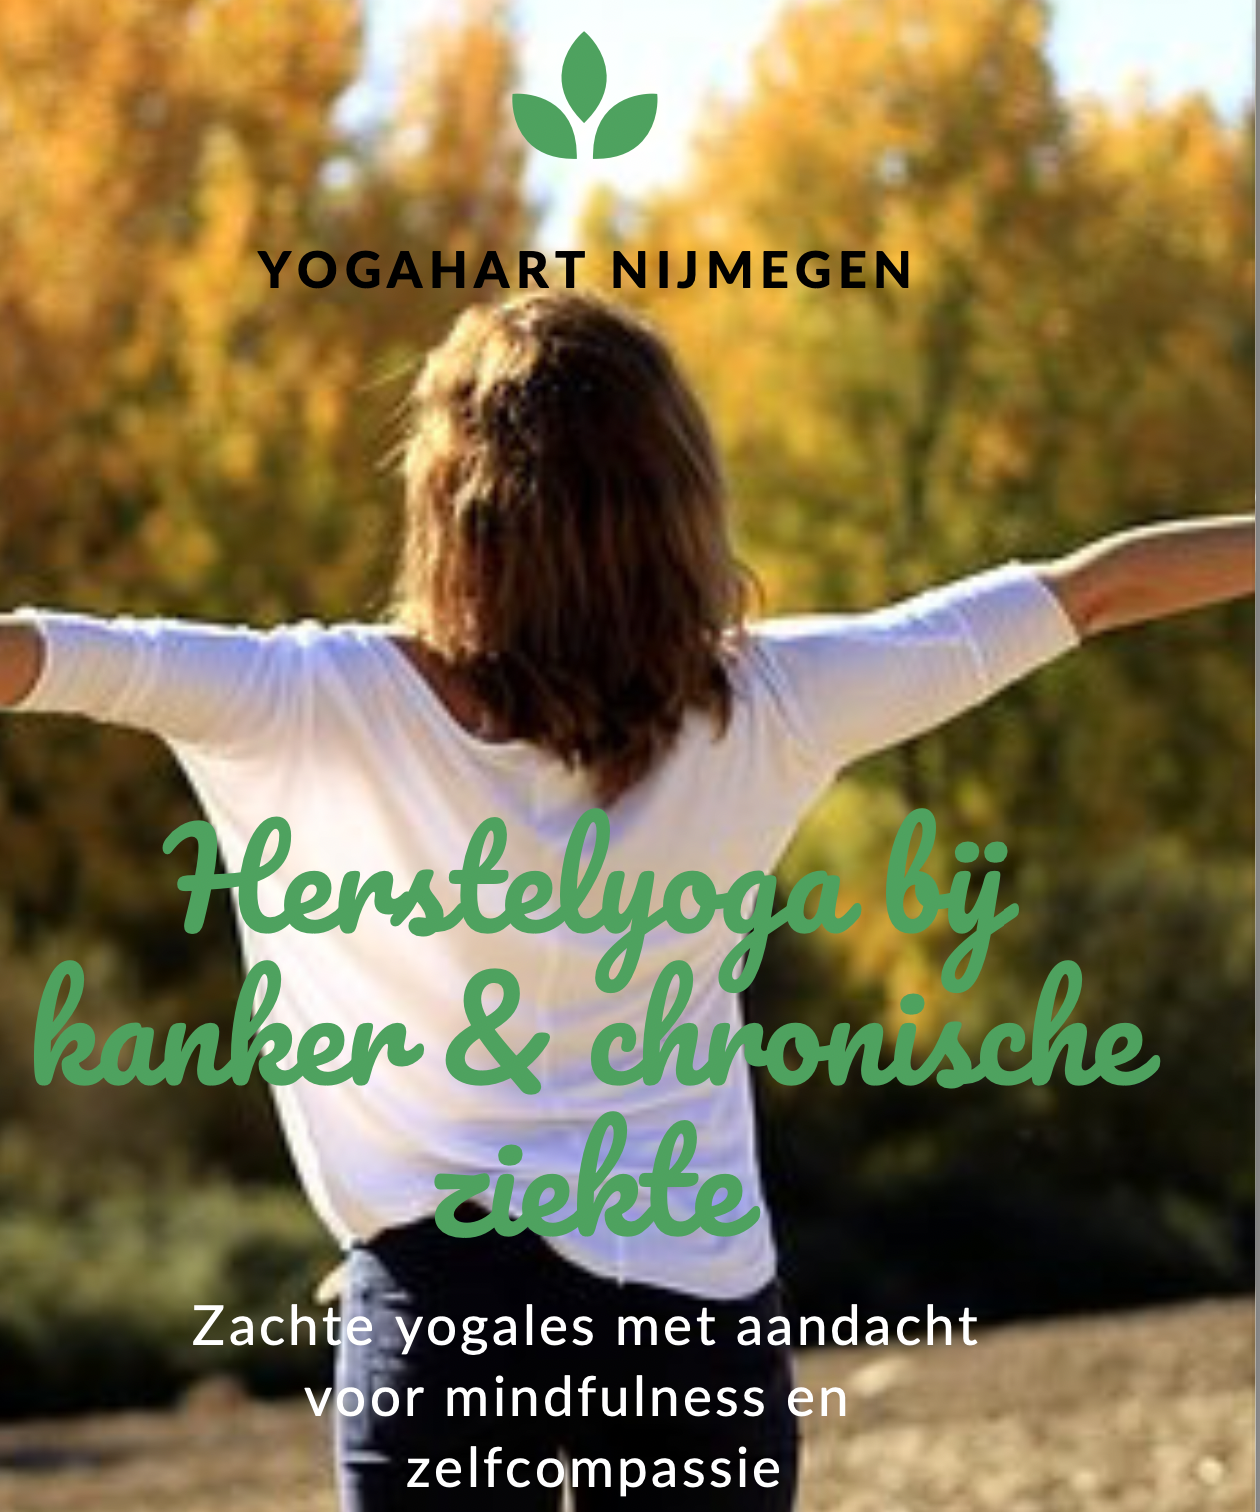 START herstelyoga najaar 2022 Yogahart Nijmegen